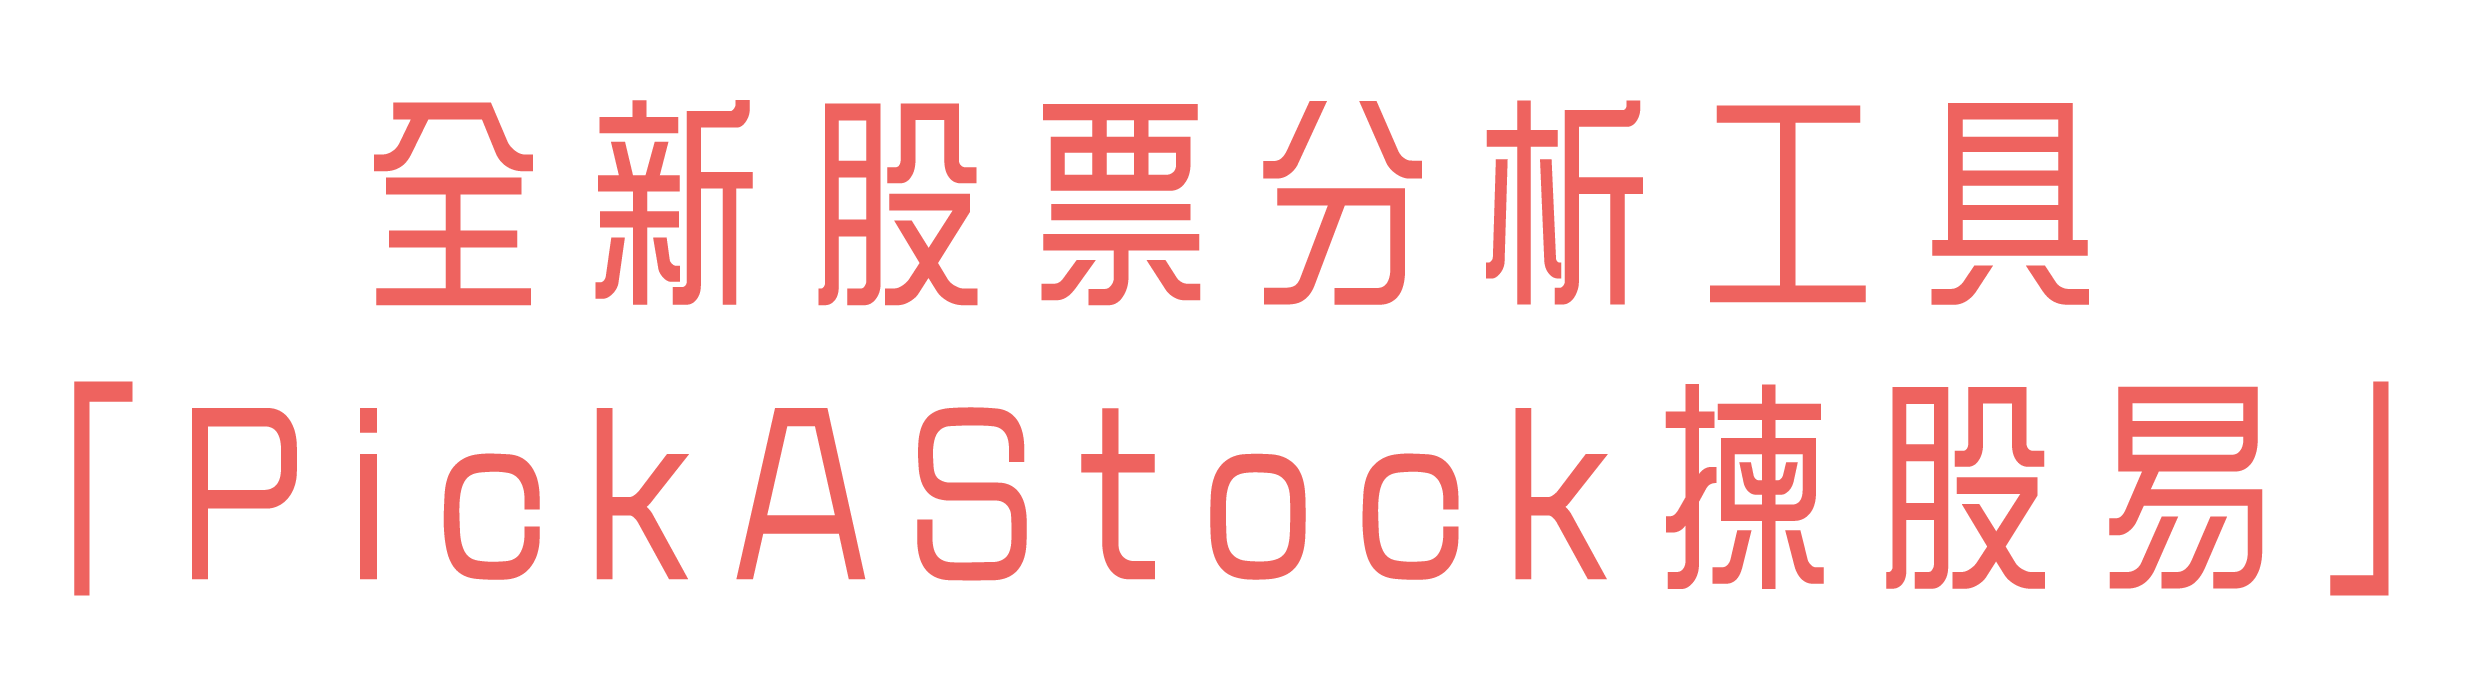 全新股票分析工具「PickAStock揀股易」